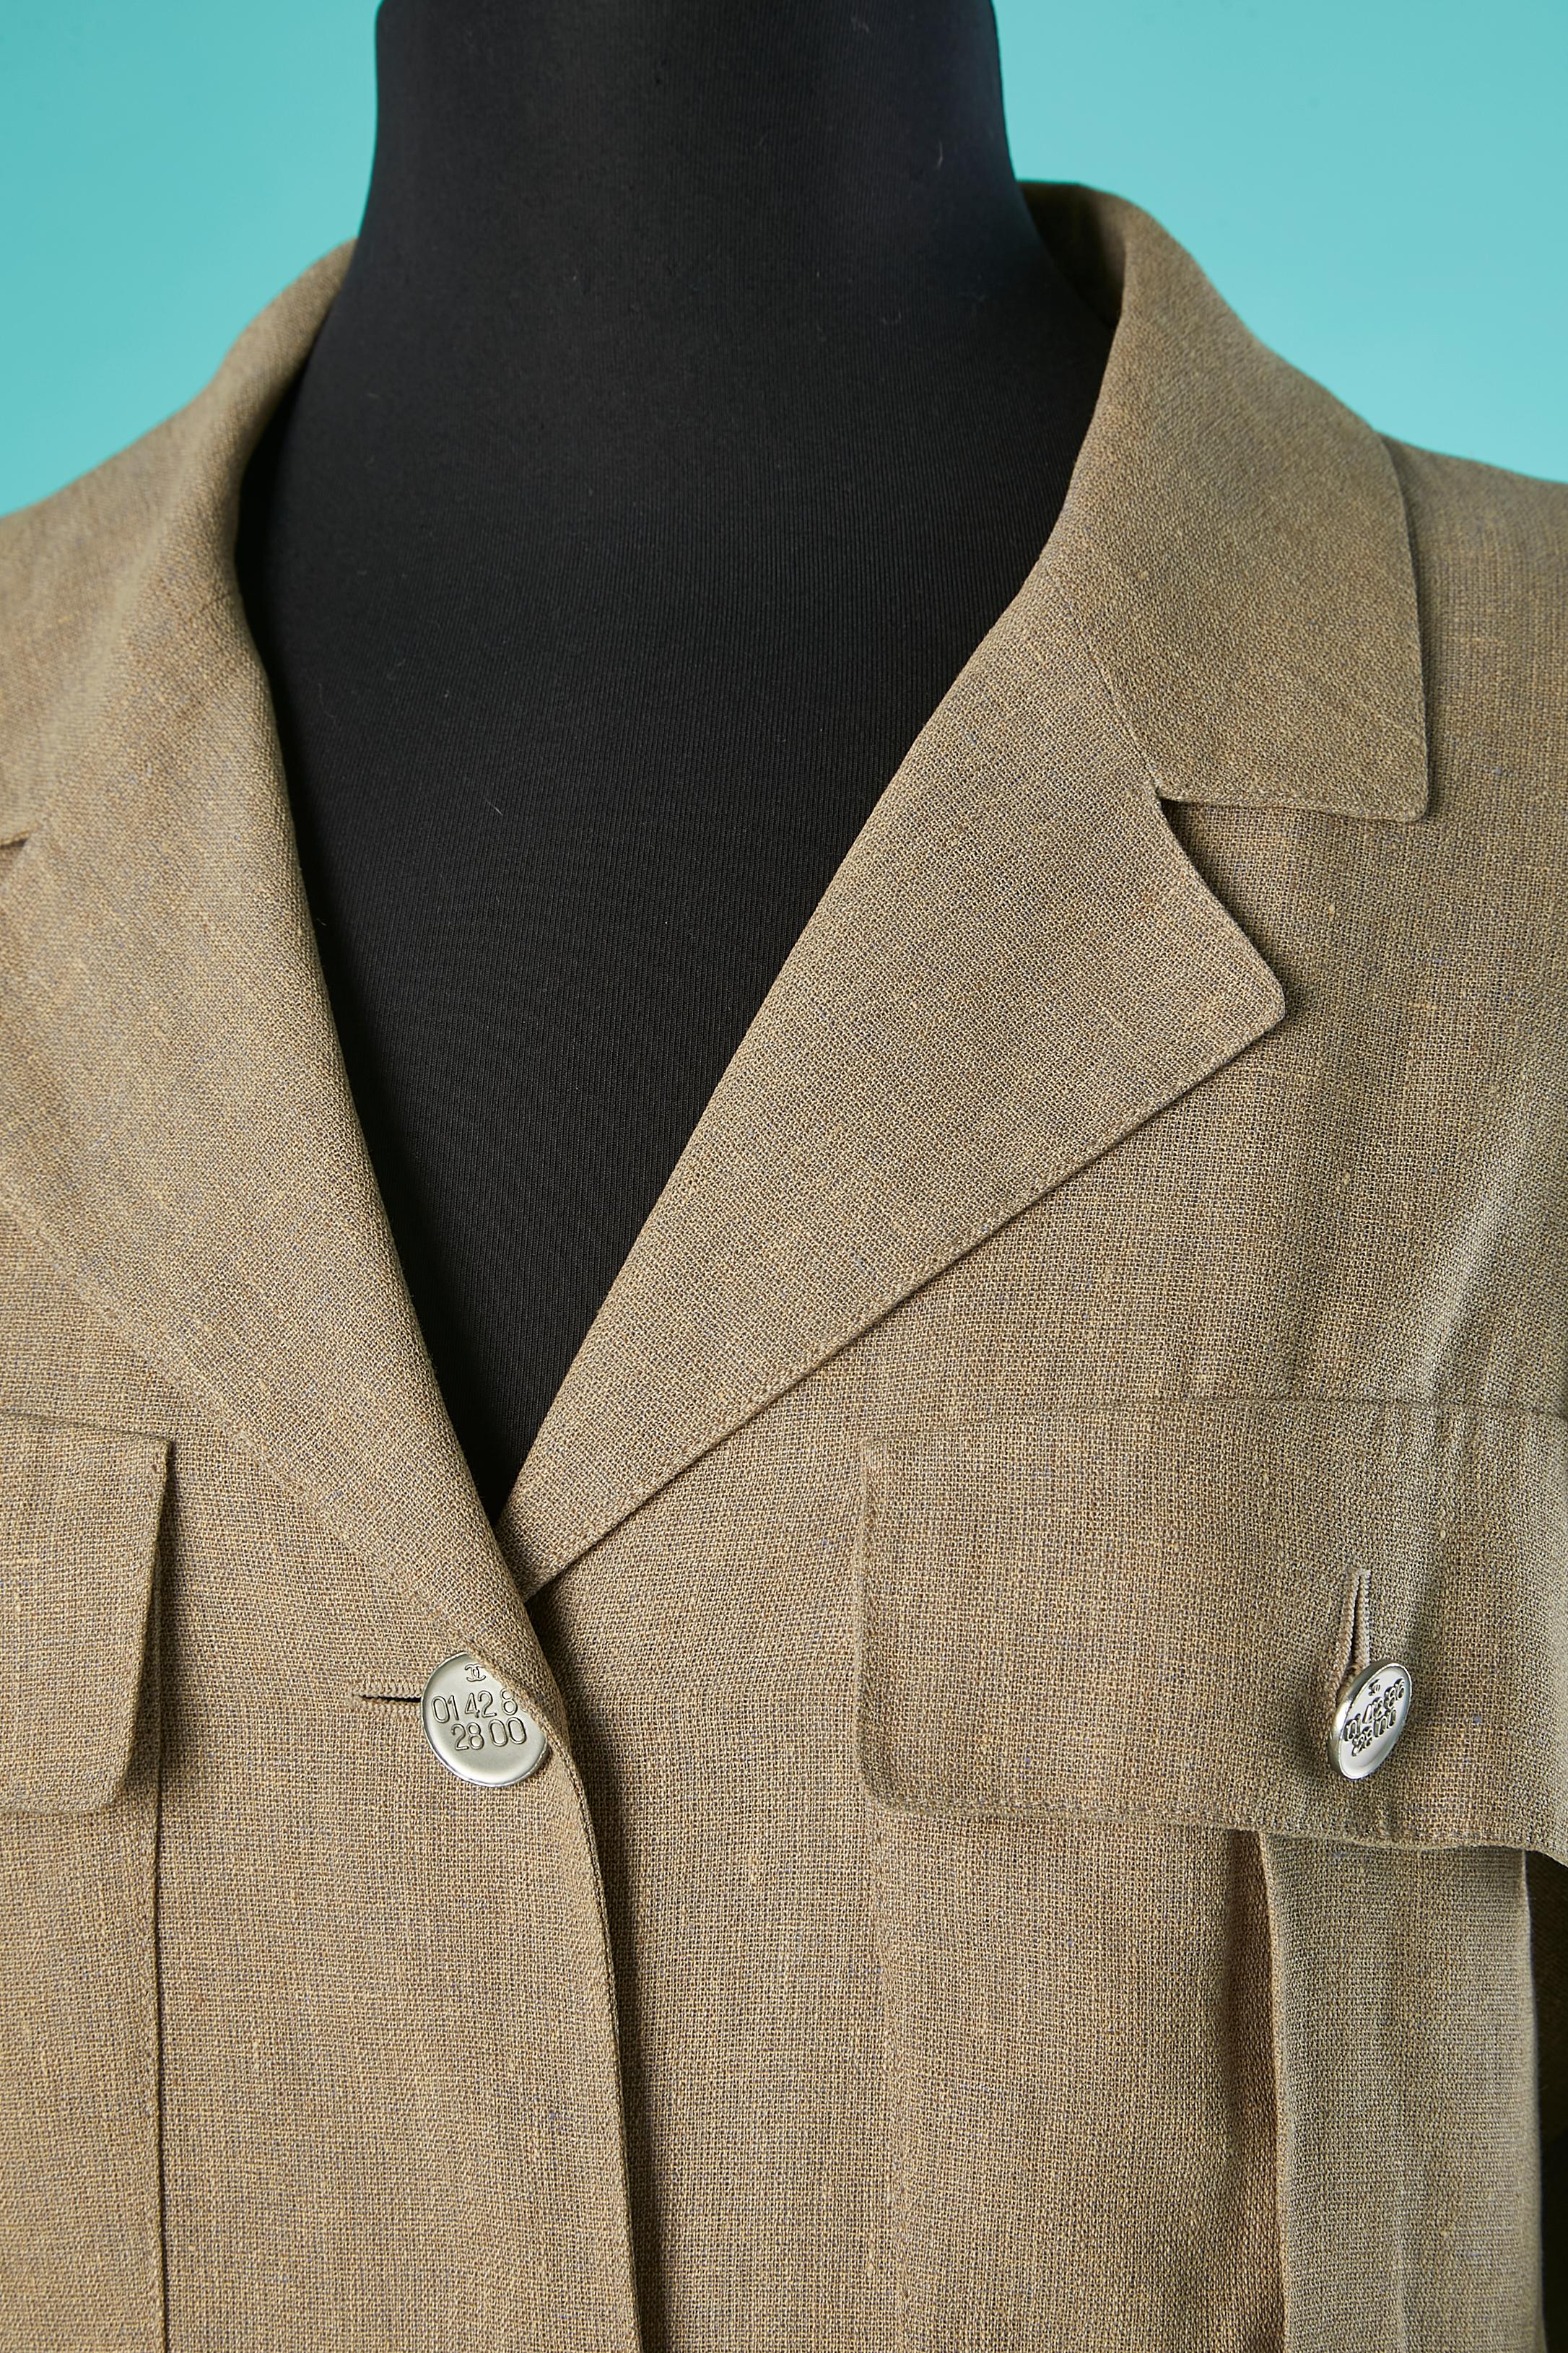 Veste Safari en lin à simple boutonnage. Doublure en soie de marque du haut jusqu'à la taille. BOUTONS DE MARQUE.
TAILLE 42 (fR) 12 (US)
